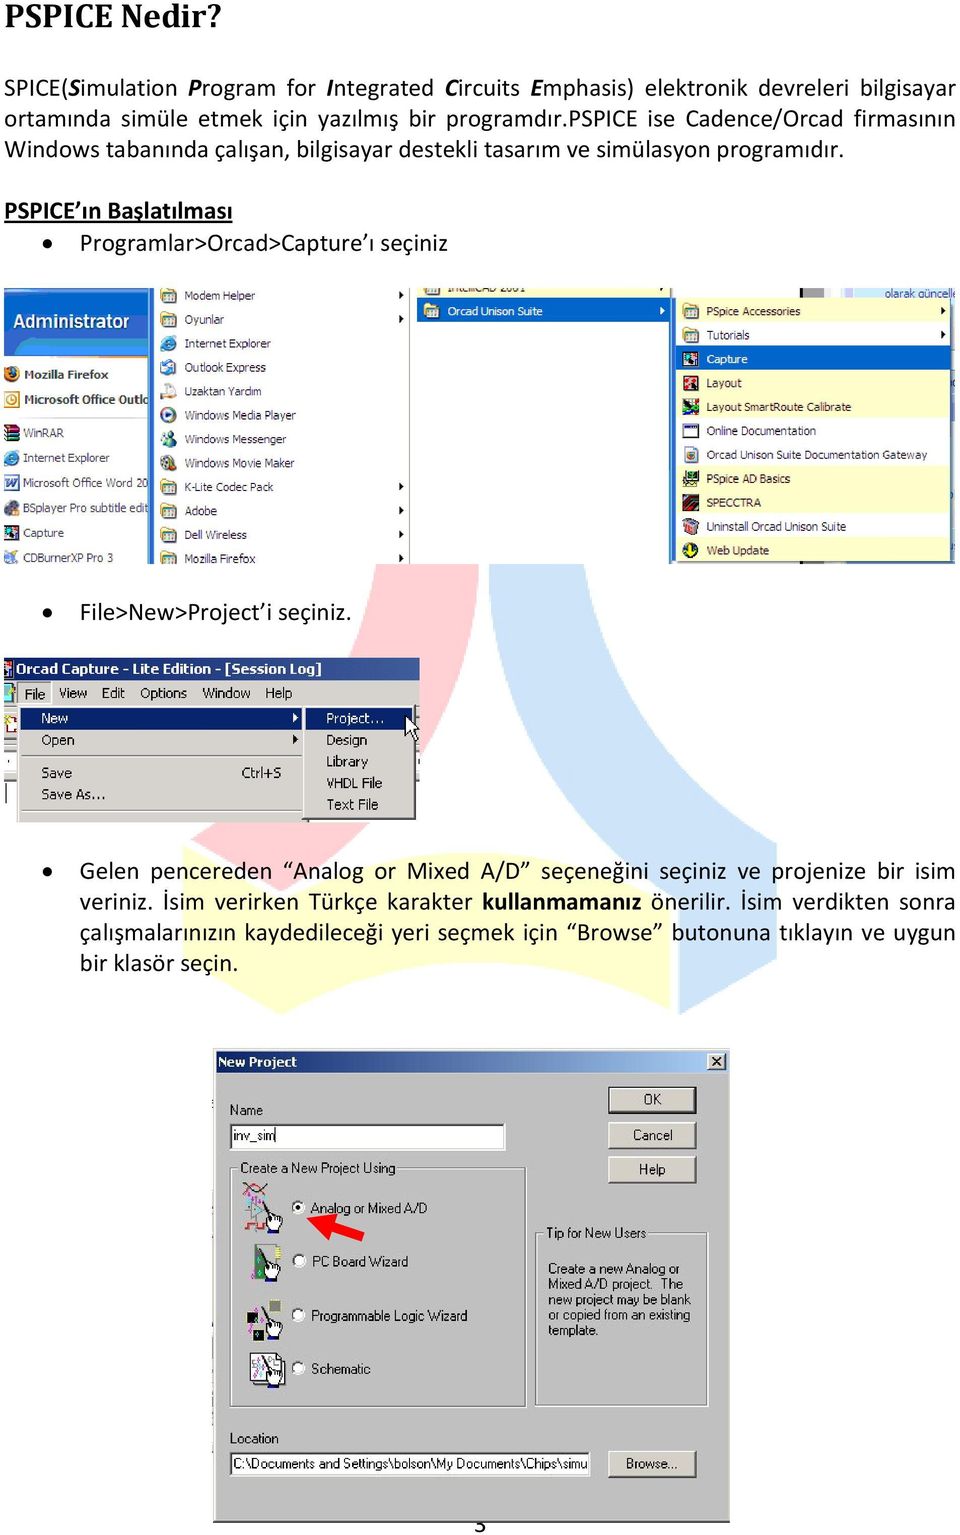 pspice ise Cadence/Orcad firmasının Windows tabanında çalışan, bilgisayar destekli tasarım ve simülasyon programıdır.